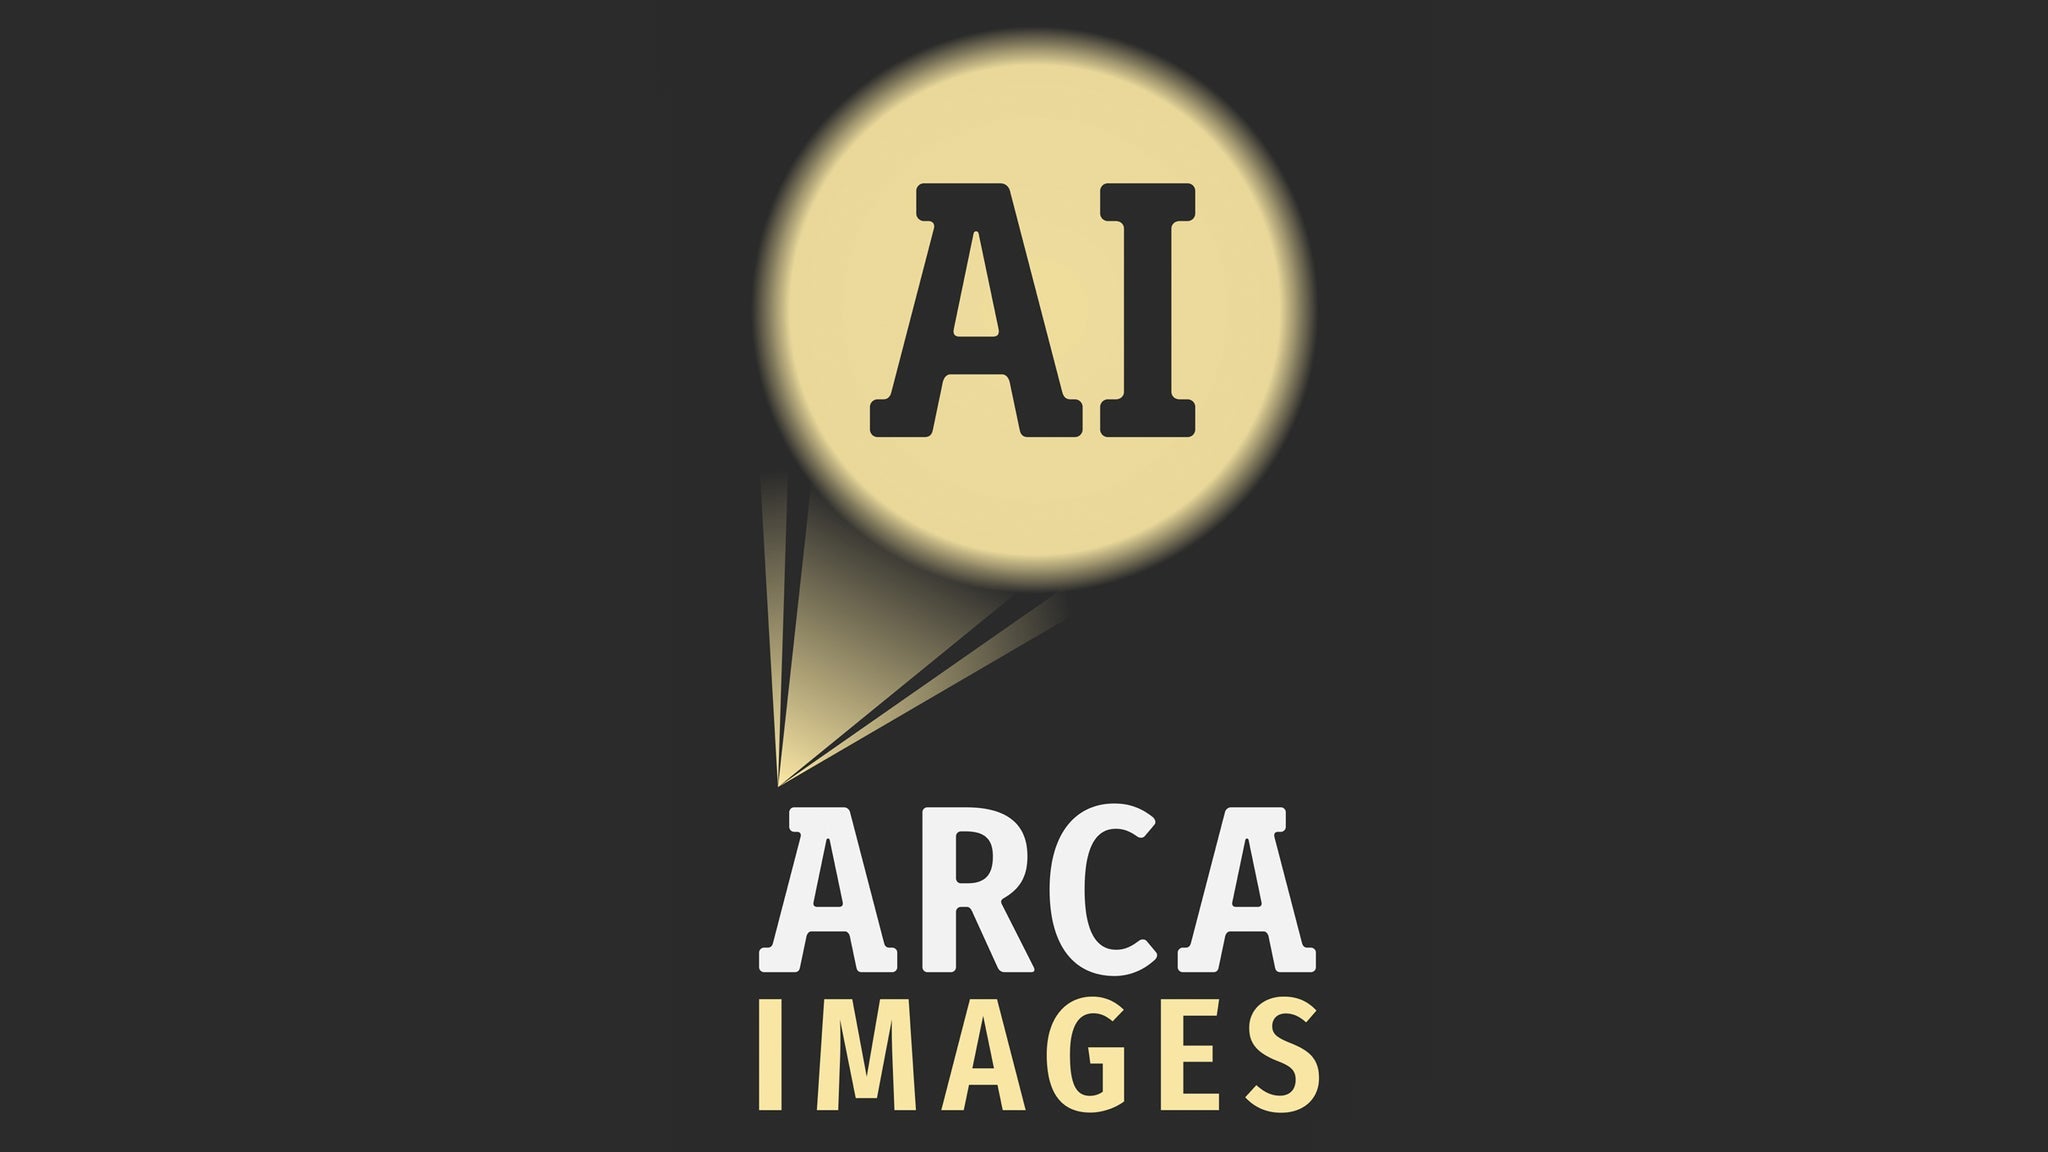 Arca Images presents " Un viaje de Navidad - A Christmas Voyage"